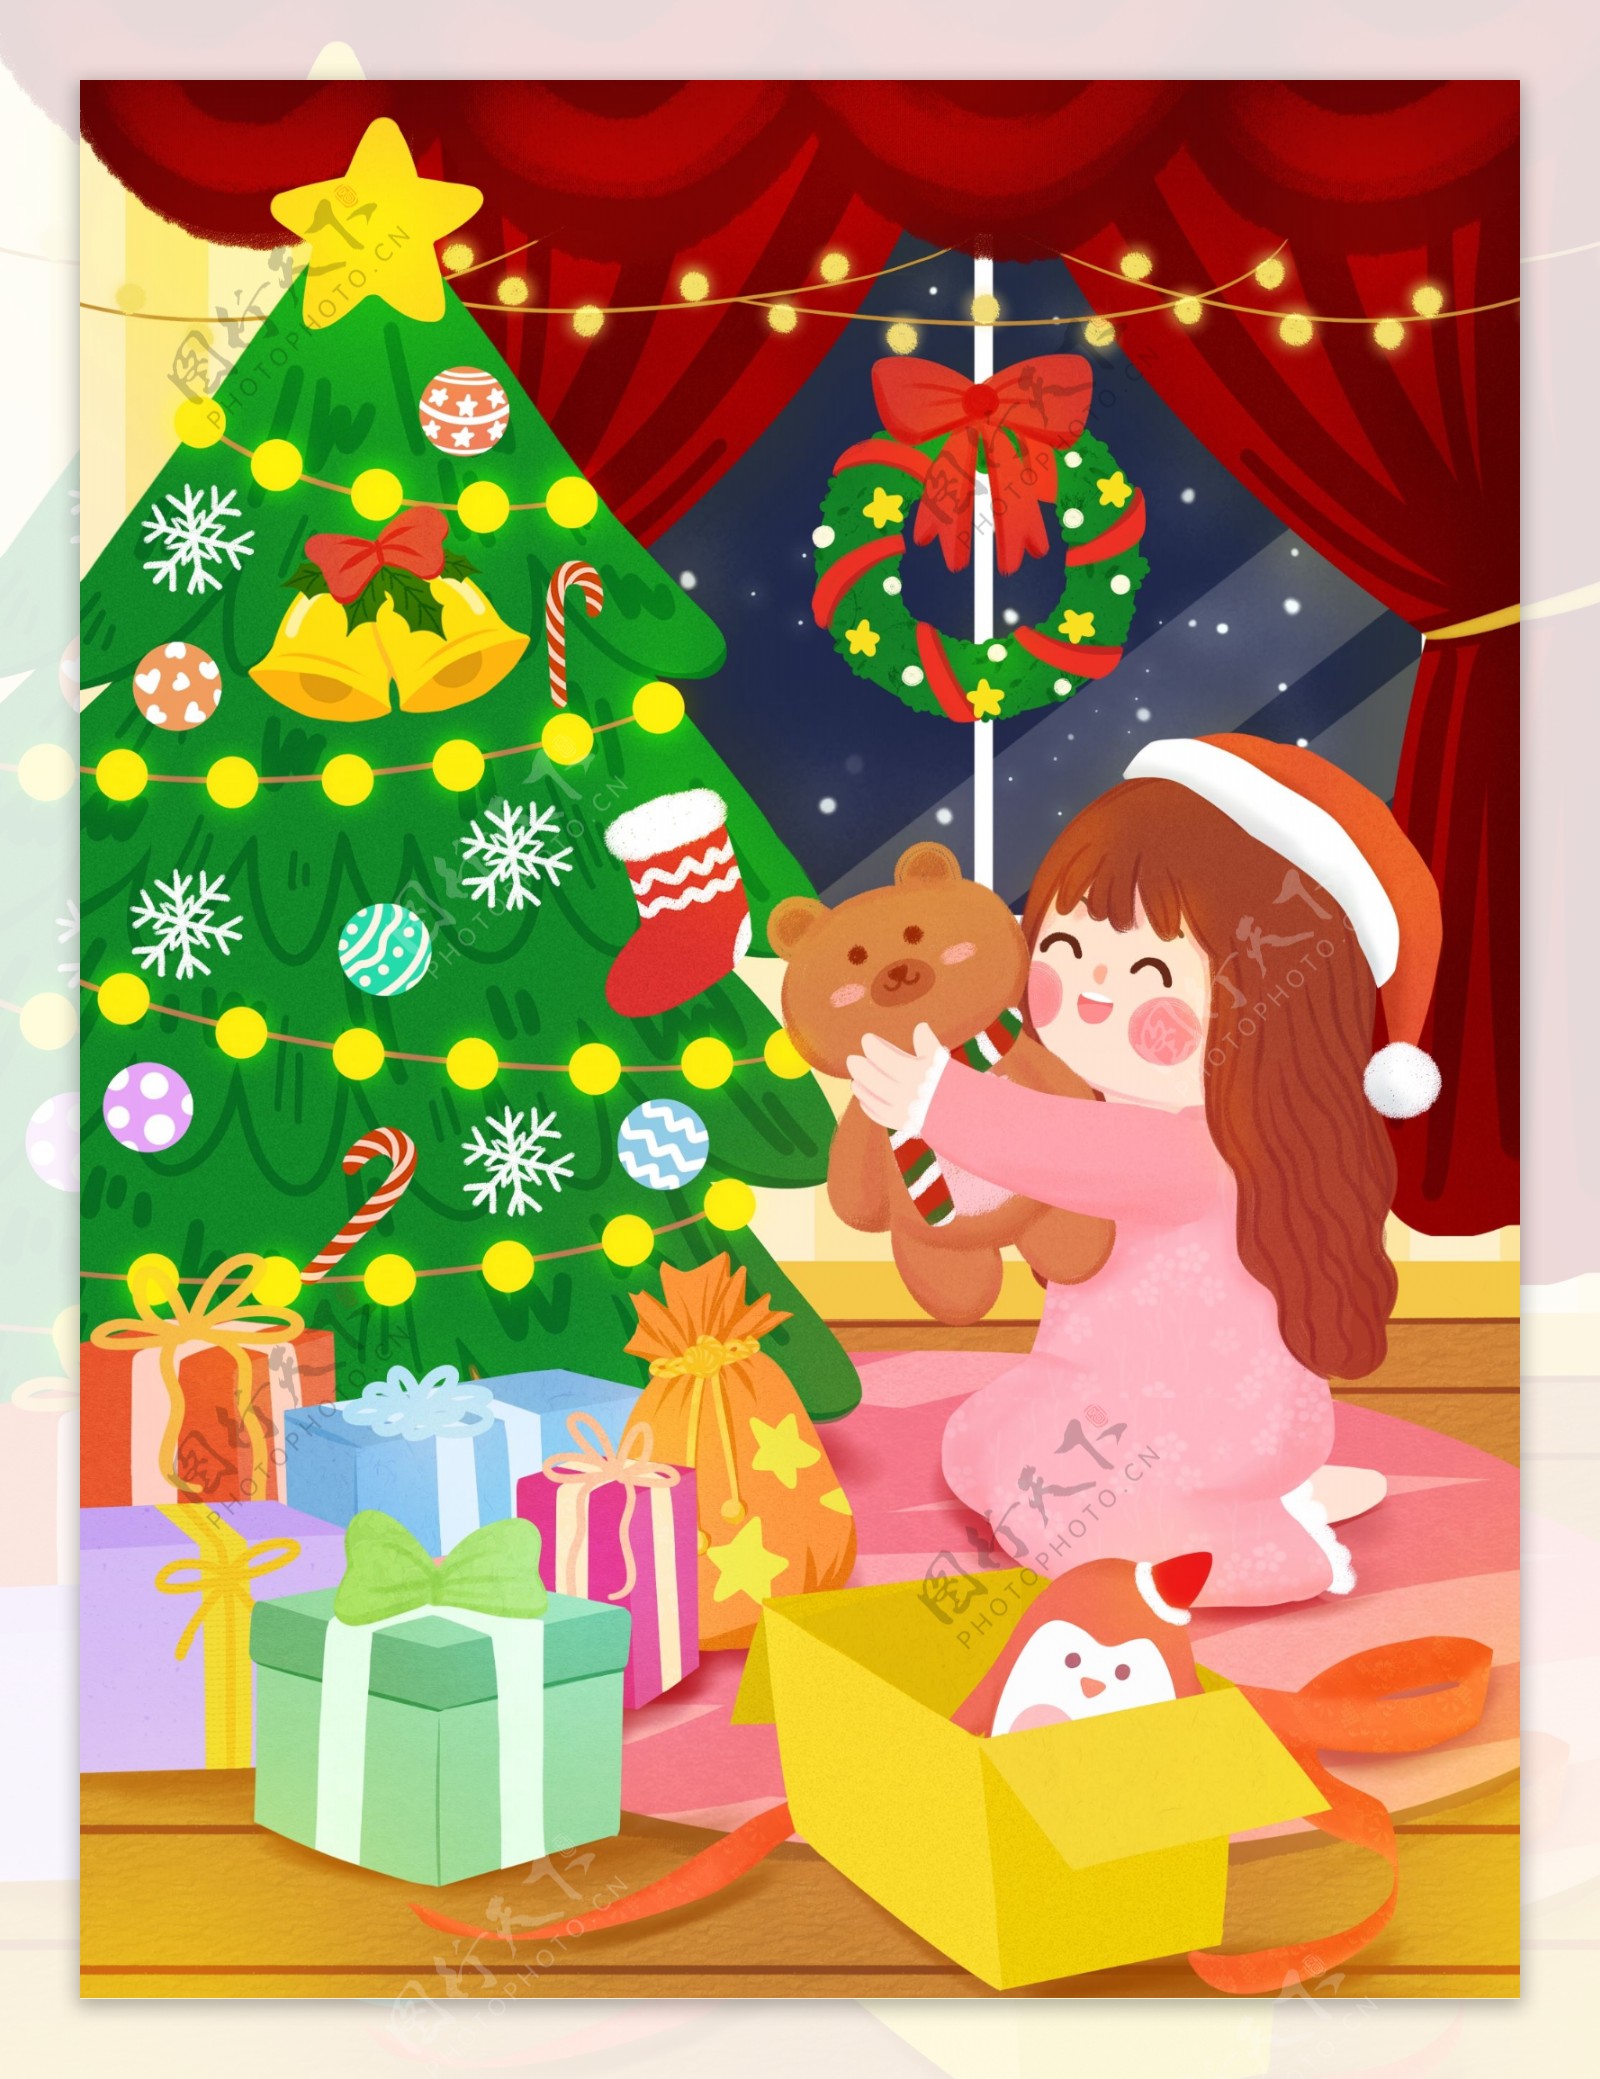 圣诞节平安夜可爱孩子拆礼物童趣手绘插画